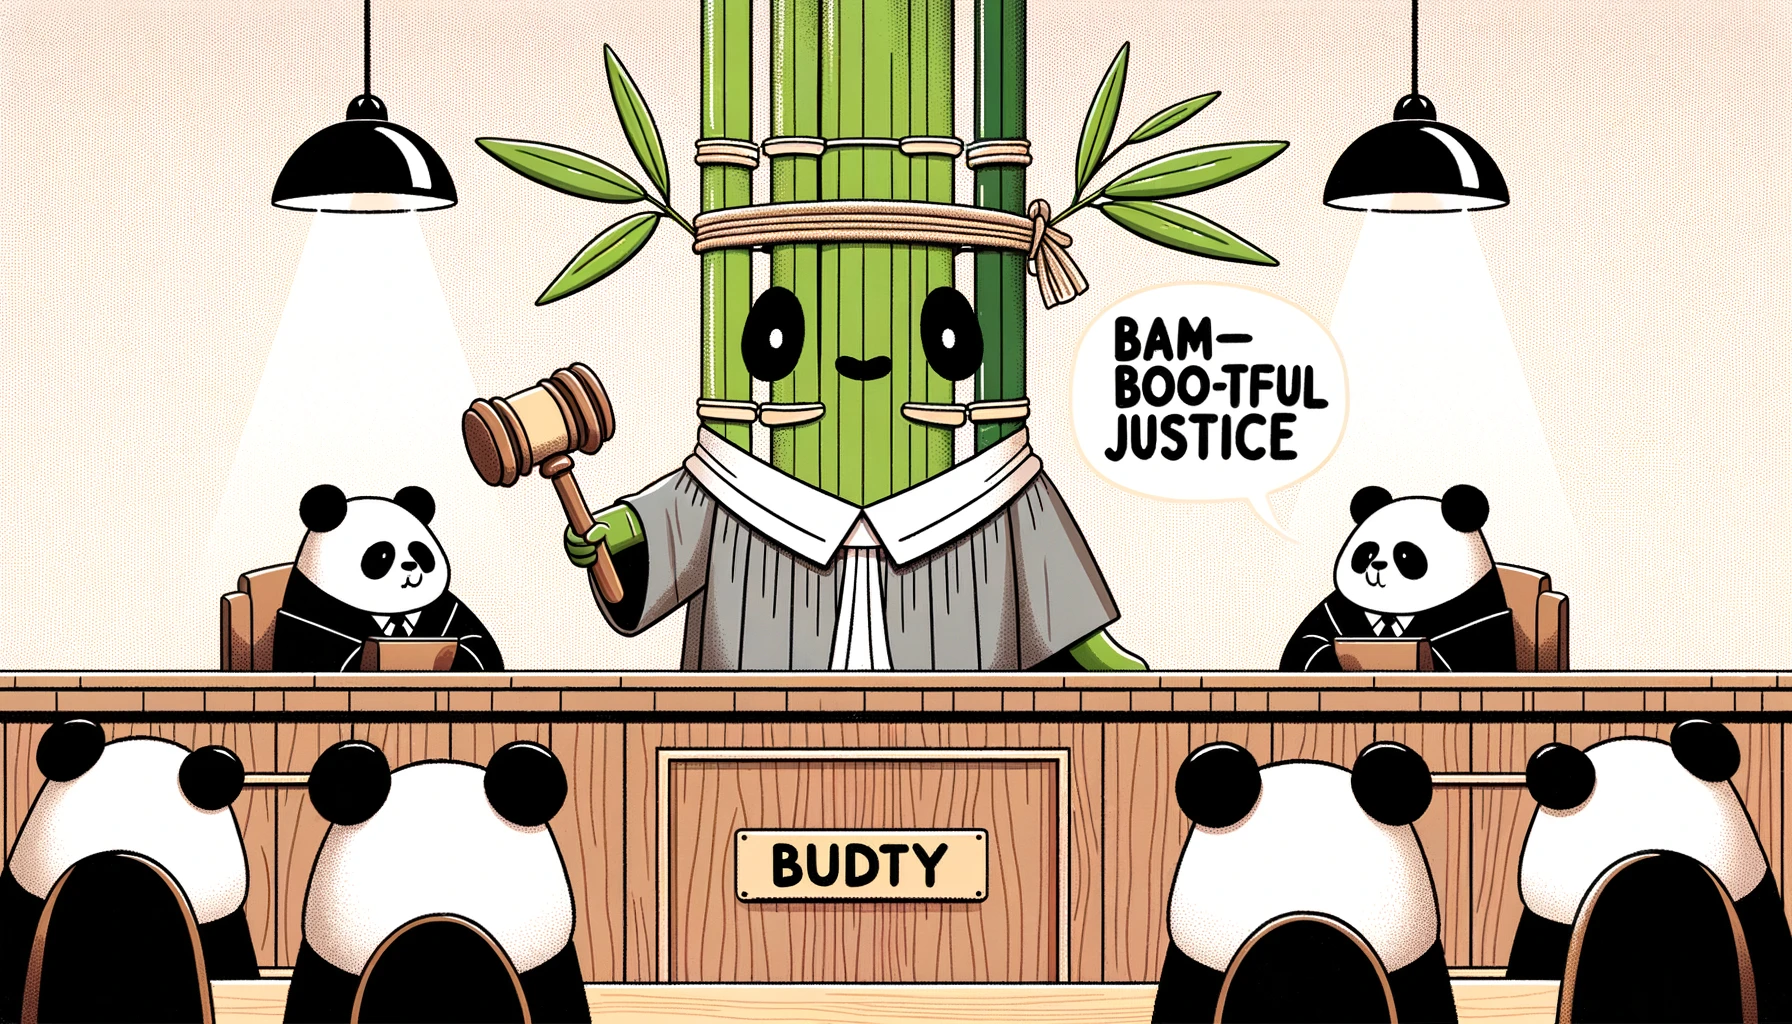 Bam-bootful justice - Bamboo Pun